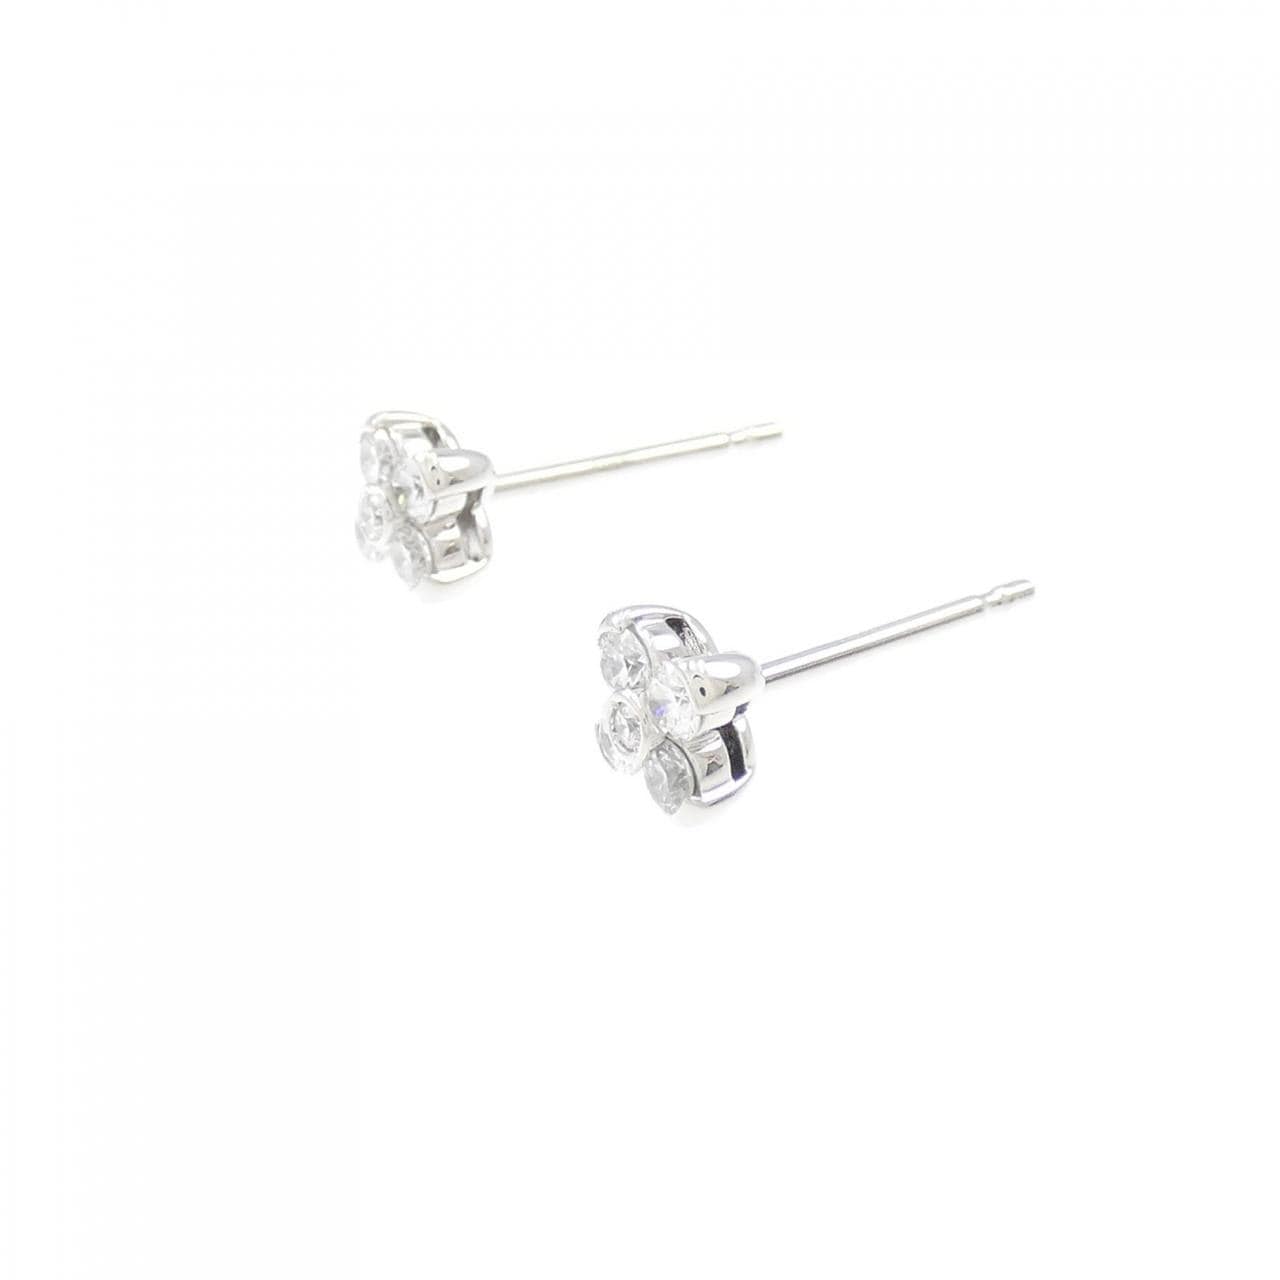 Royal Asscher flower Diamond earrings 0.32CT